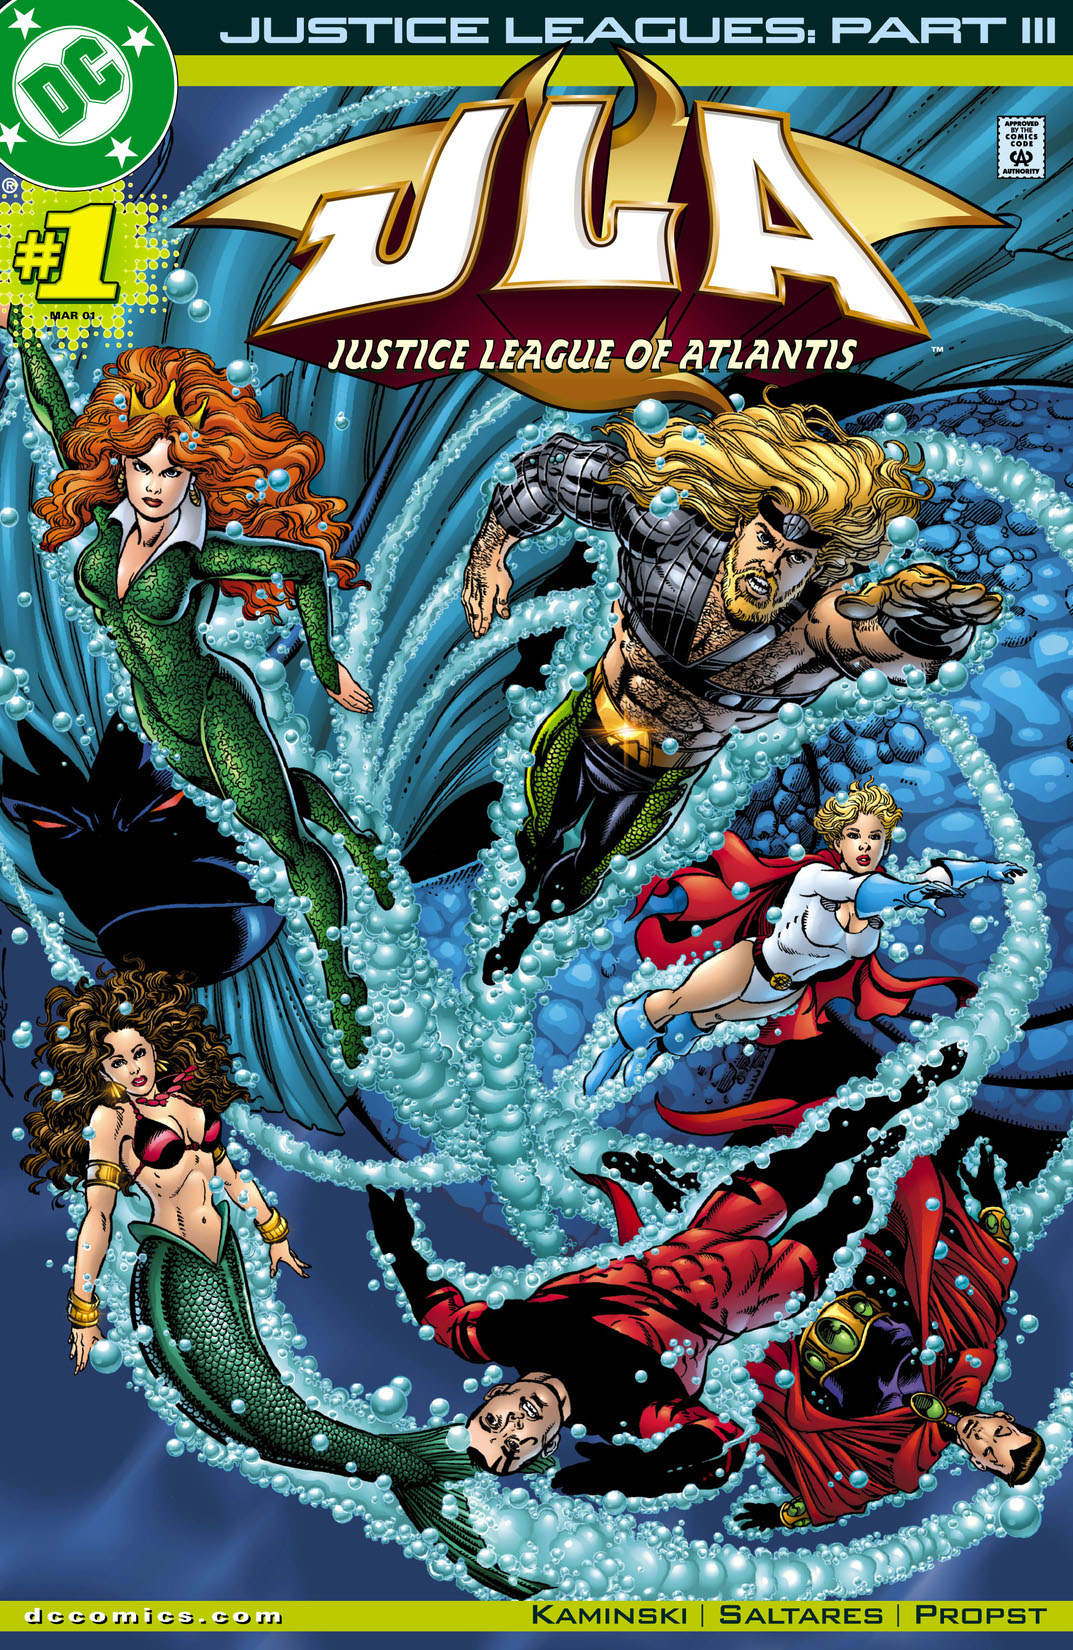 Justice Leagues: Justice League of Atlantis #1 preview images